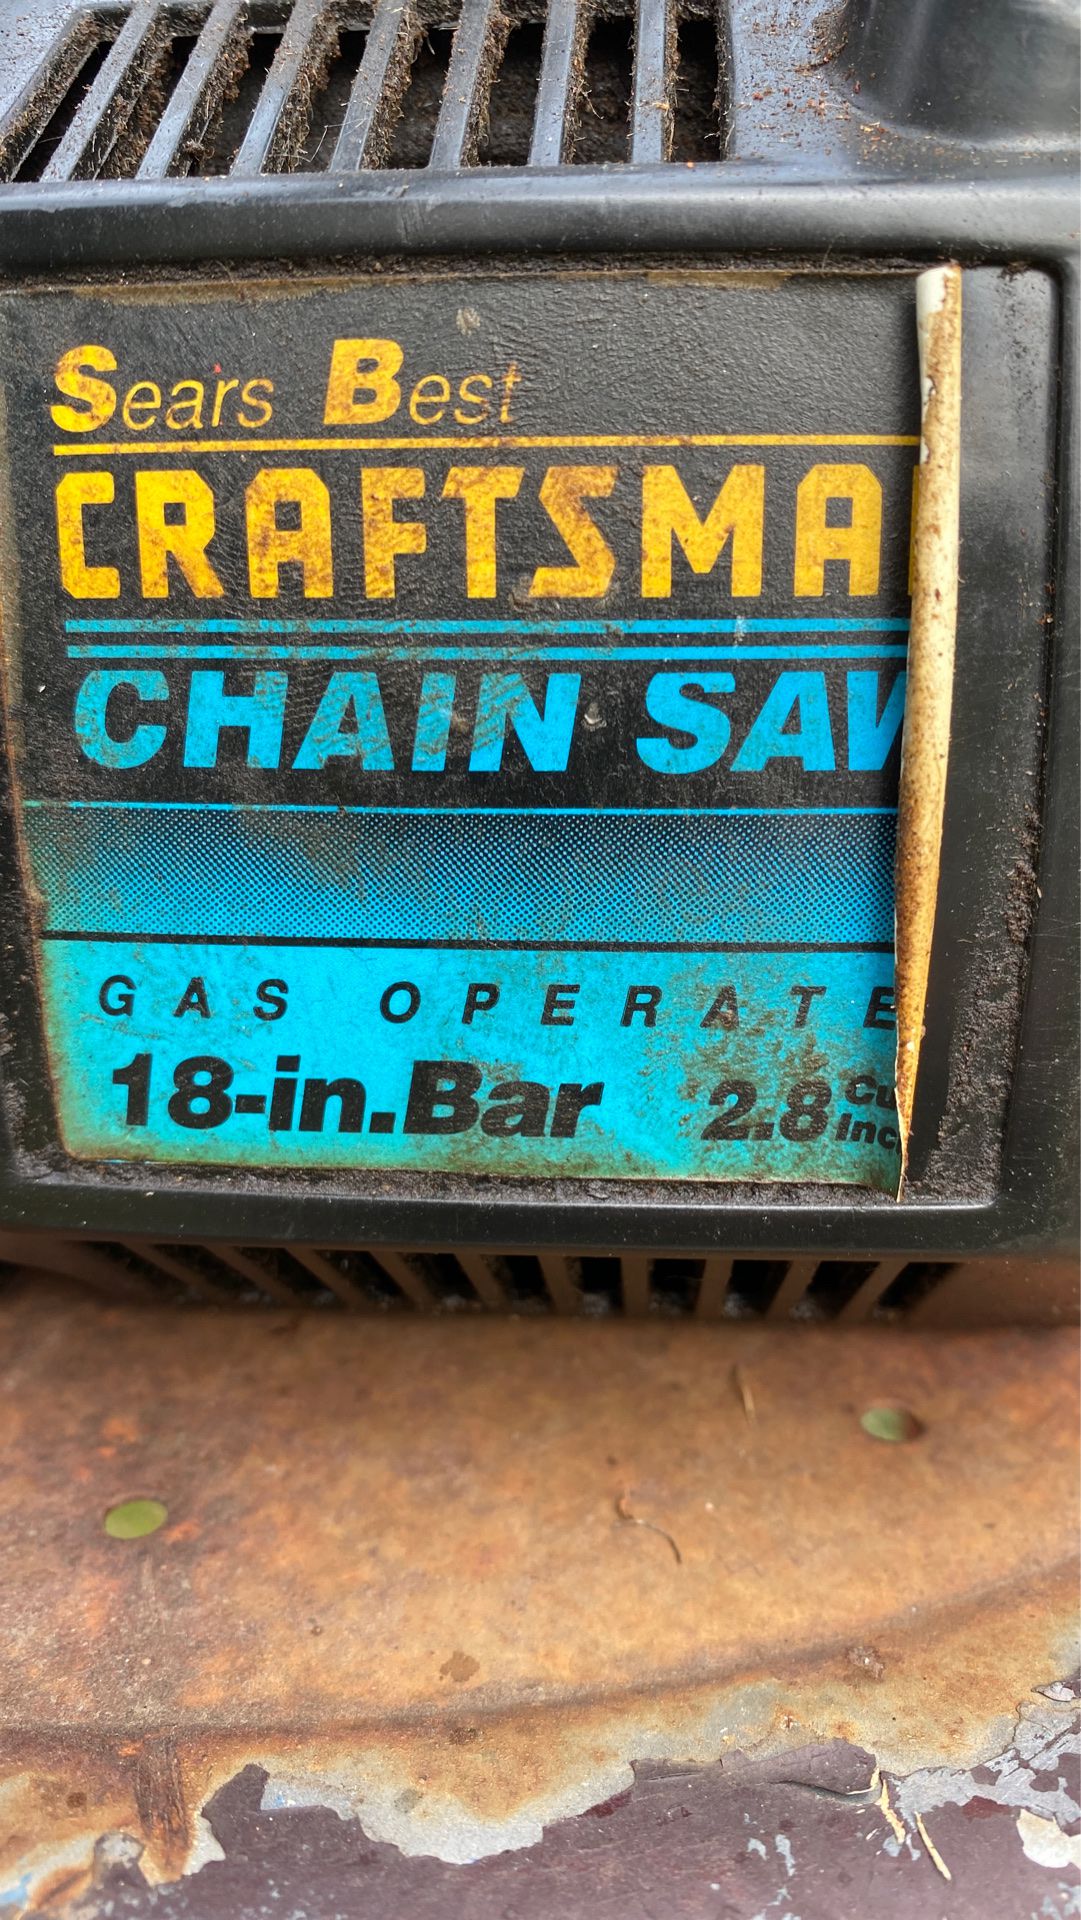 Craftsmen chainsaw